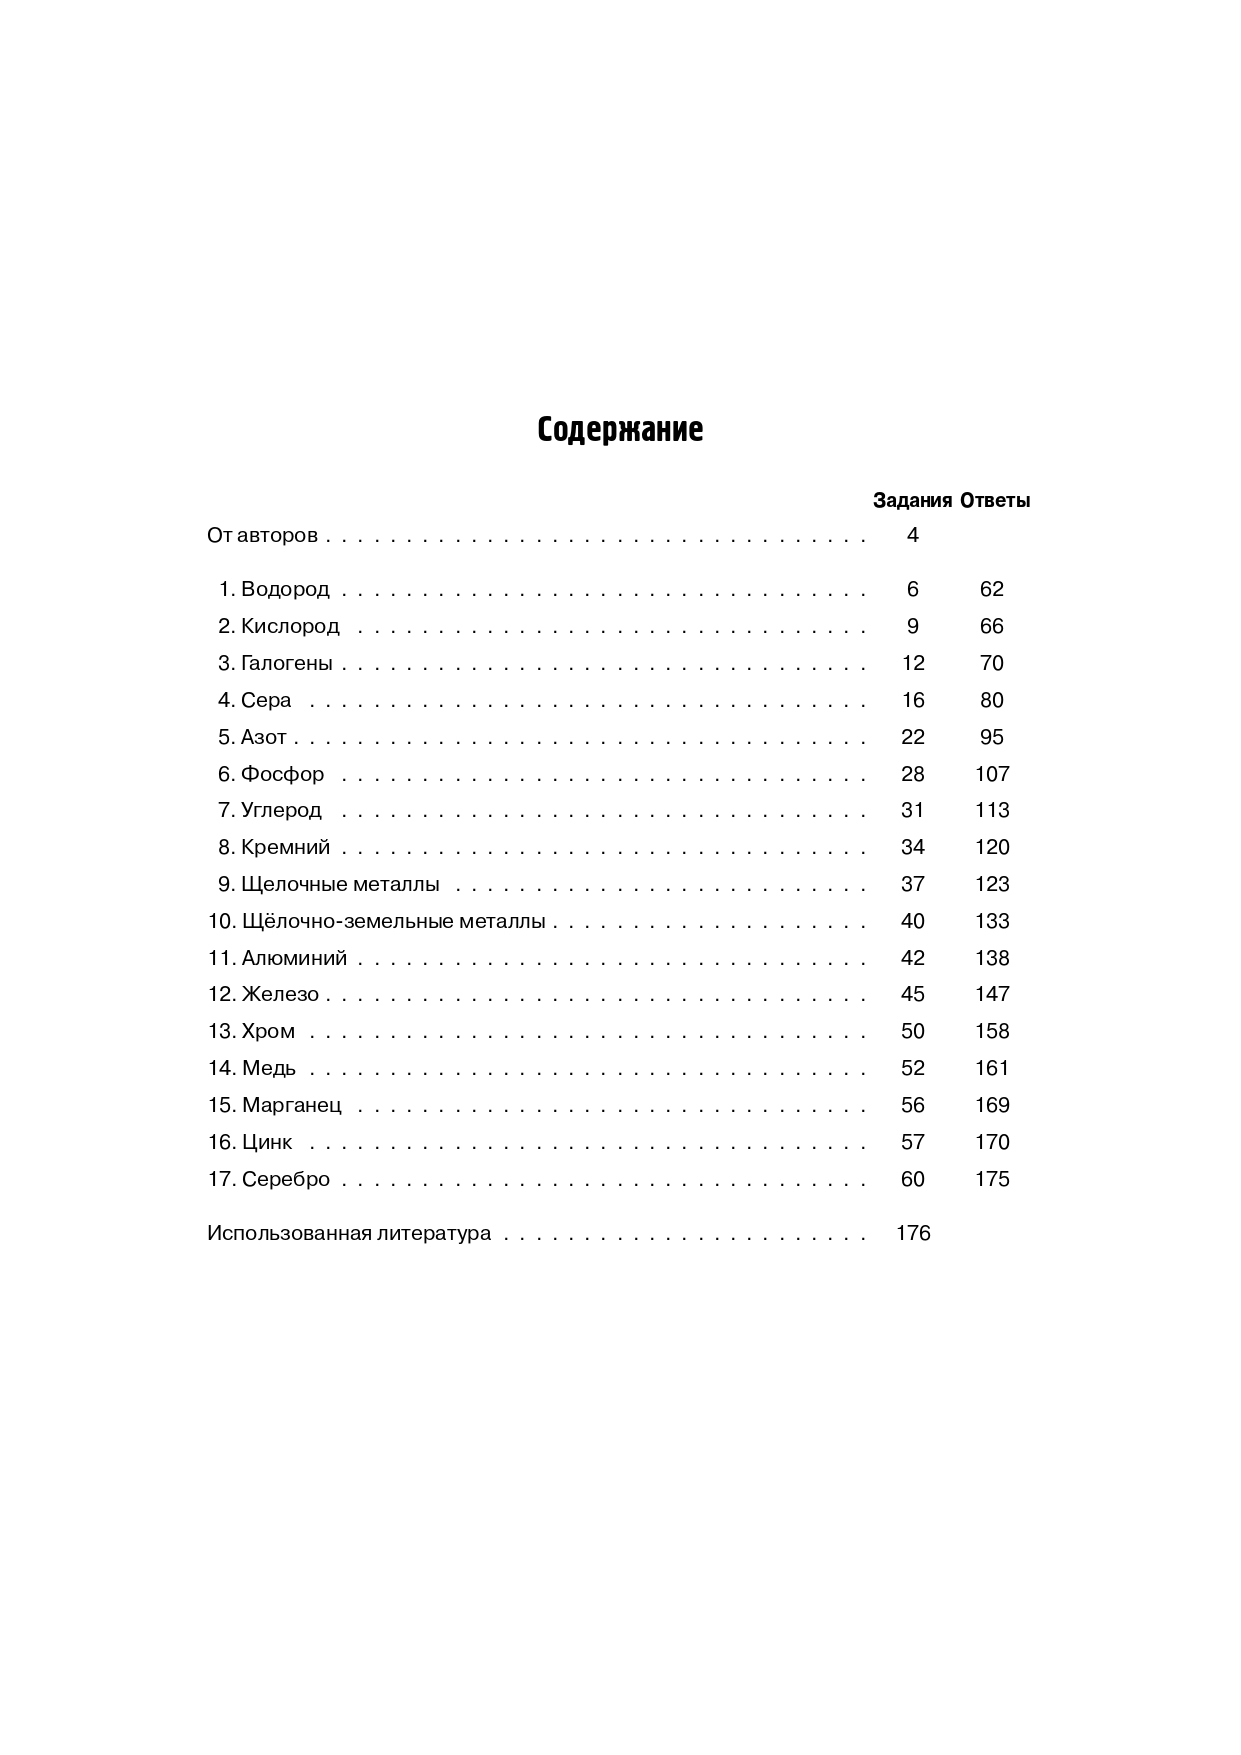 Химия. ЕГЭ. 10–11-е классы. Раздел «Неорганическая химия». Сборник заданий. Изд. 7-е, перераб.